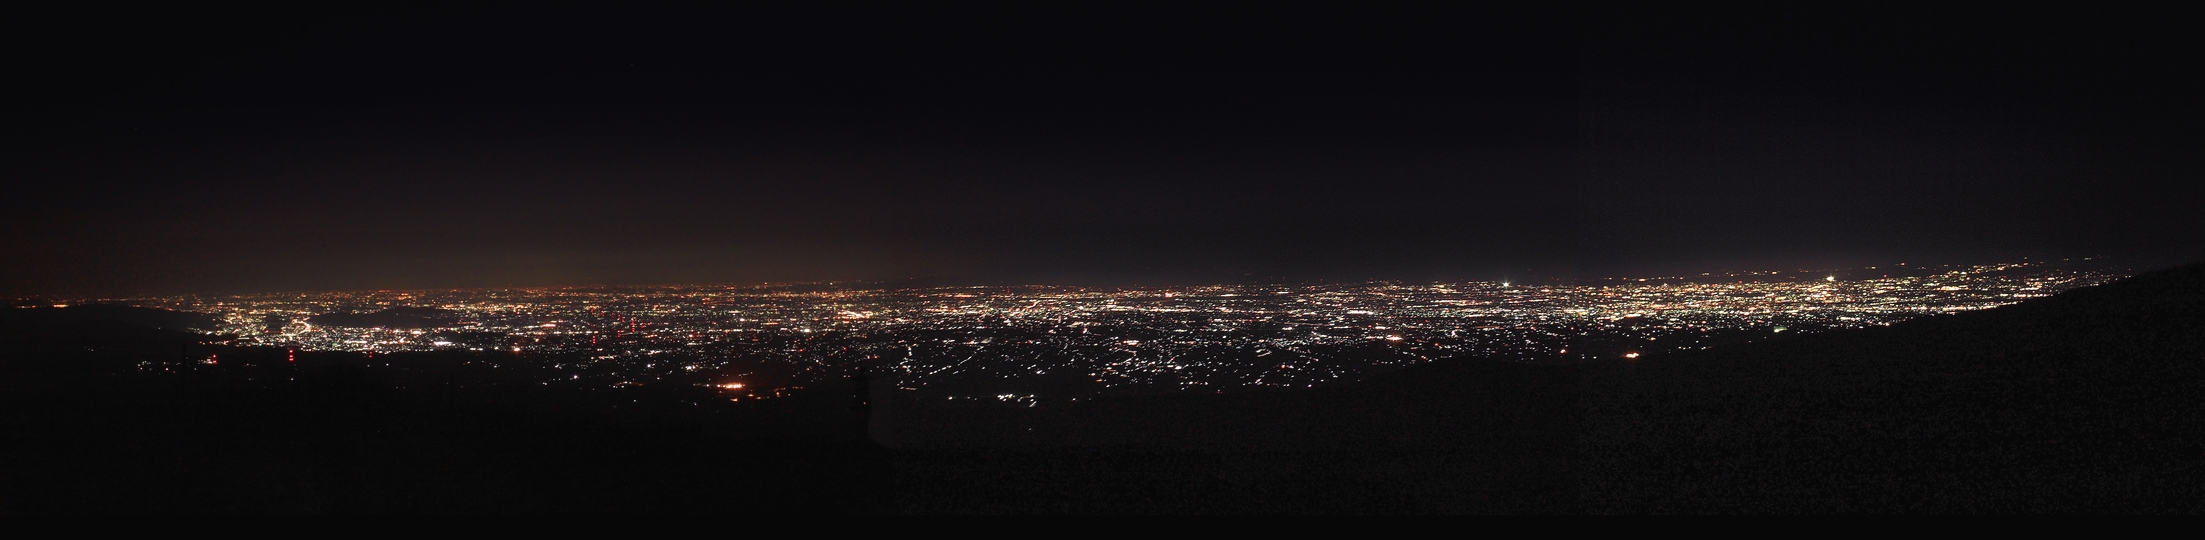 赤城山 夜景パノラマ展望台 夜景を見るためのナイトハイキングコース